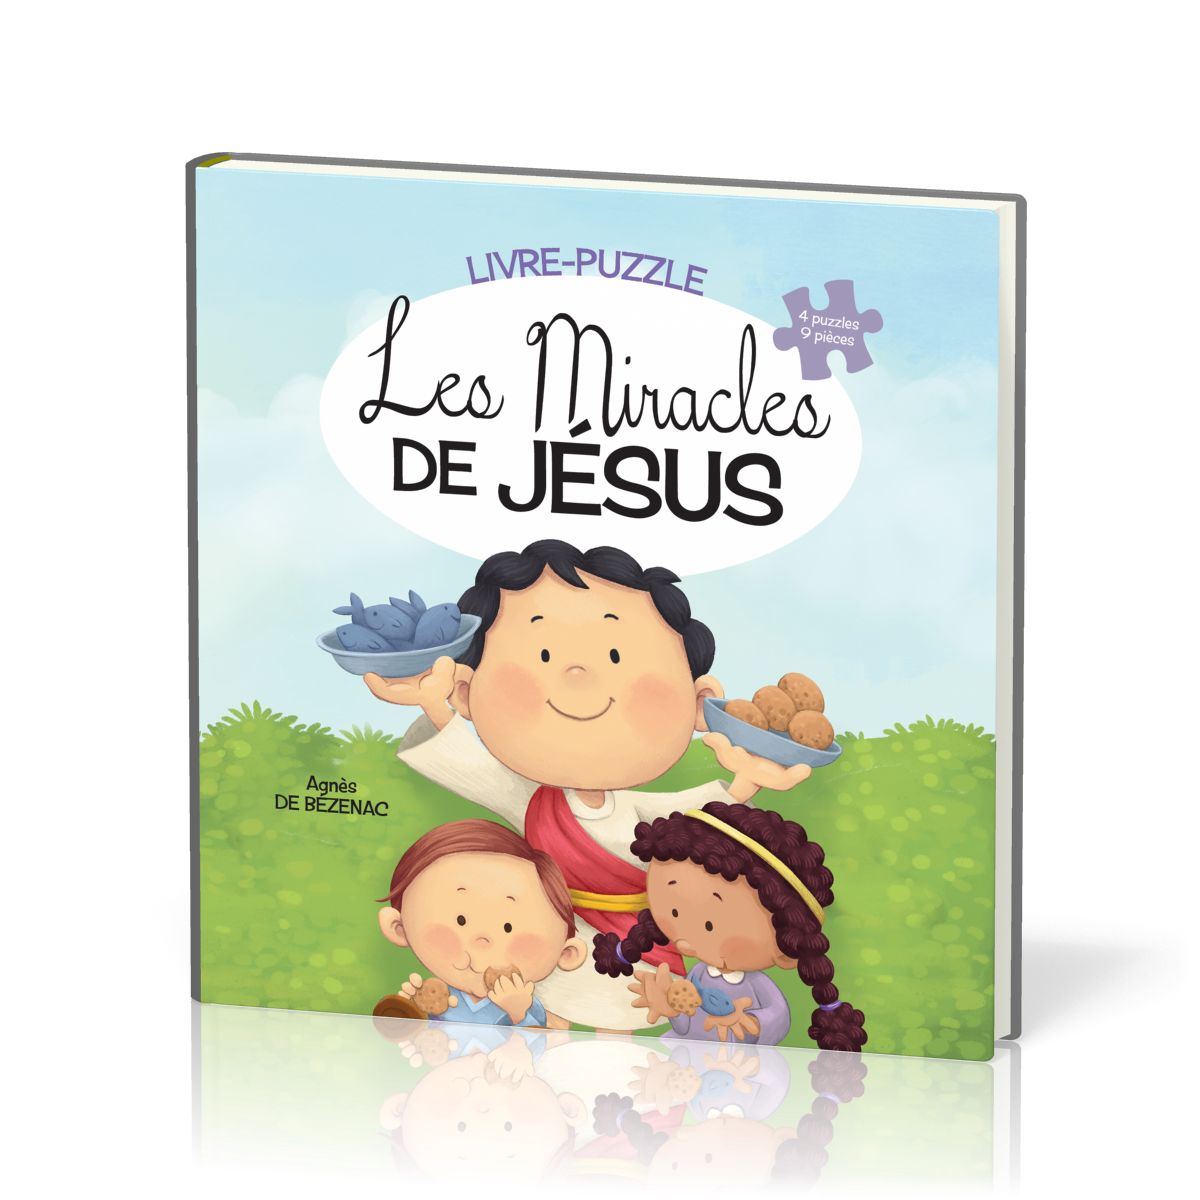 Miracles de Jésus (Les) - Livre-puzzle